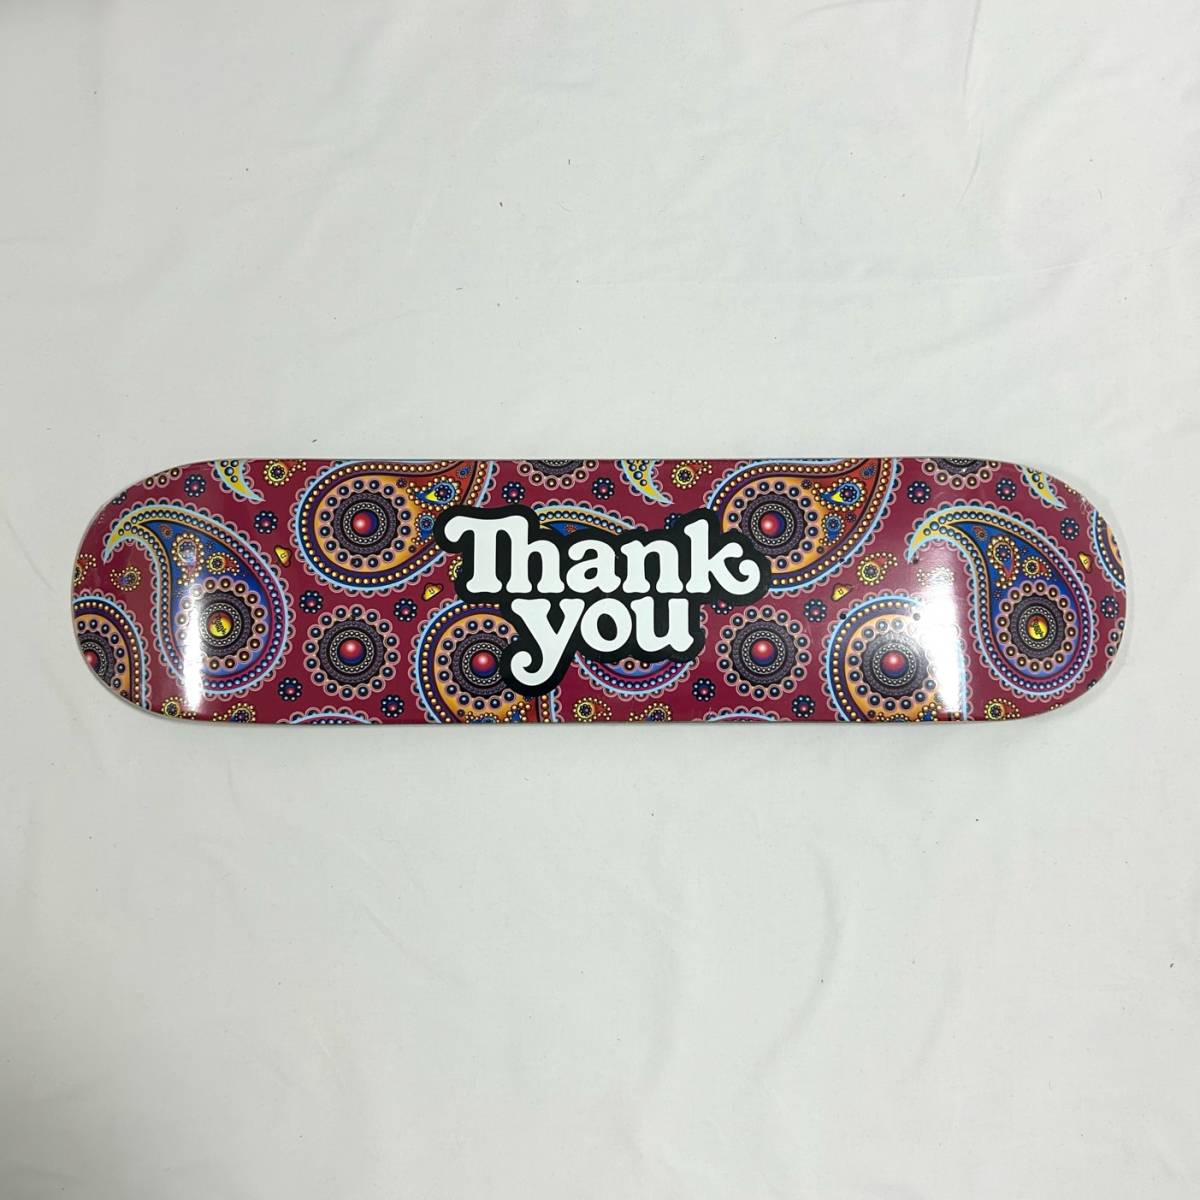 【新品】Thank You スケボー デッキ 7.75 サンキュー Paisley Logo Deck スケートボード コンプリート SKATE BOARD COMPLETE_画像2